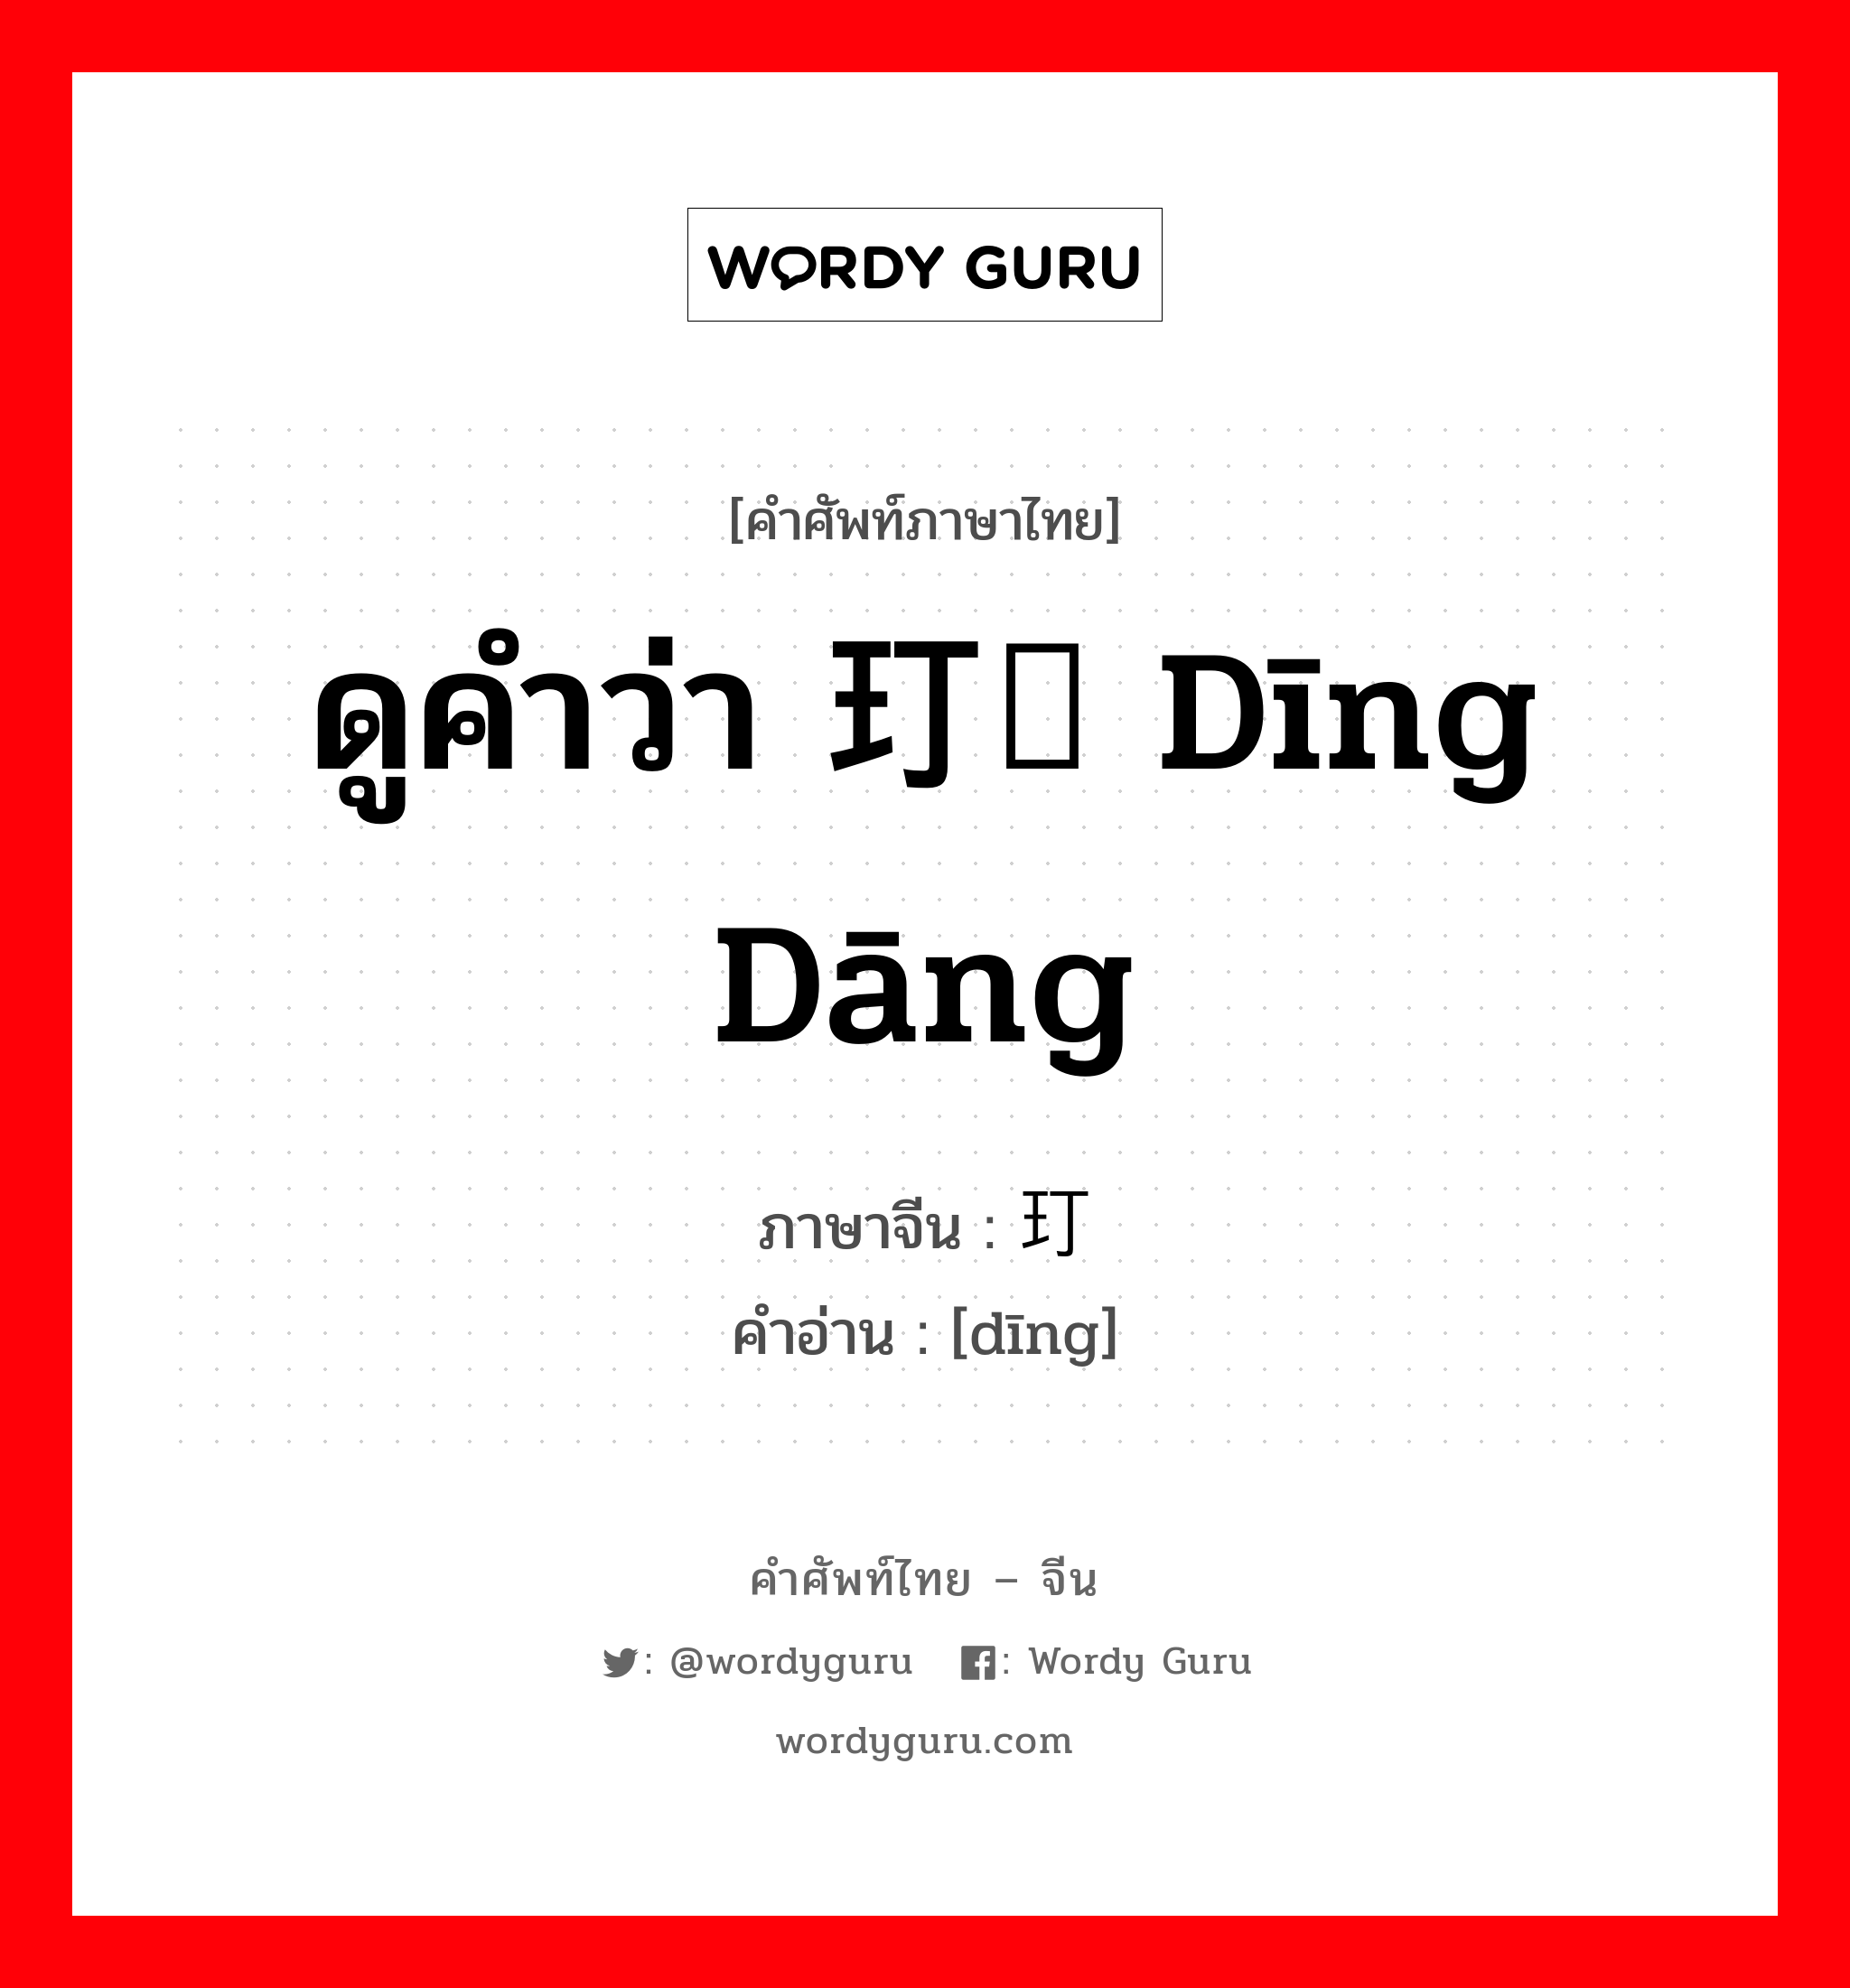 ดูคำว่า 玎珰 dīng dāng ภาษาจีนคืออะไร, คำศัพท์ภาษาไทย - จีน ดูคำว่า 玎珰 dīng dāng ภาษาจีน 玎 คำอ่าน [dīng]